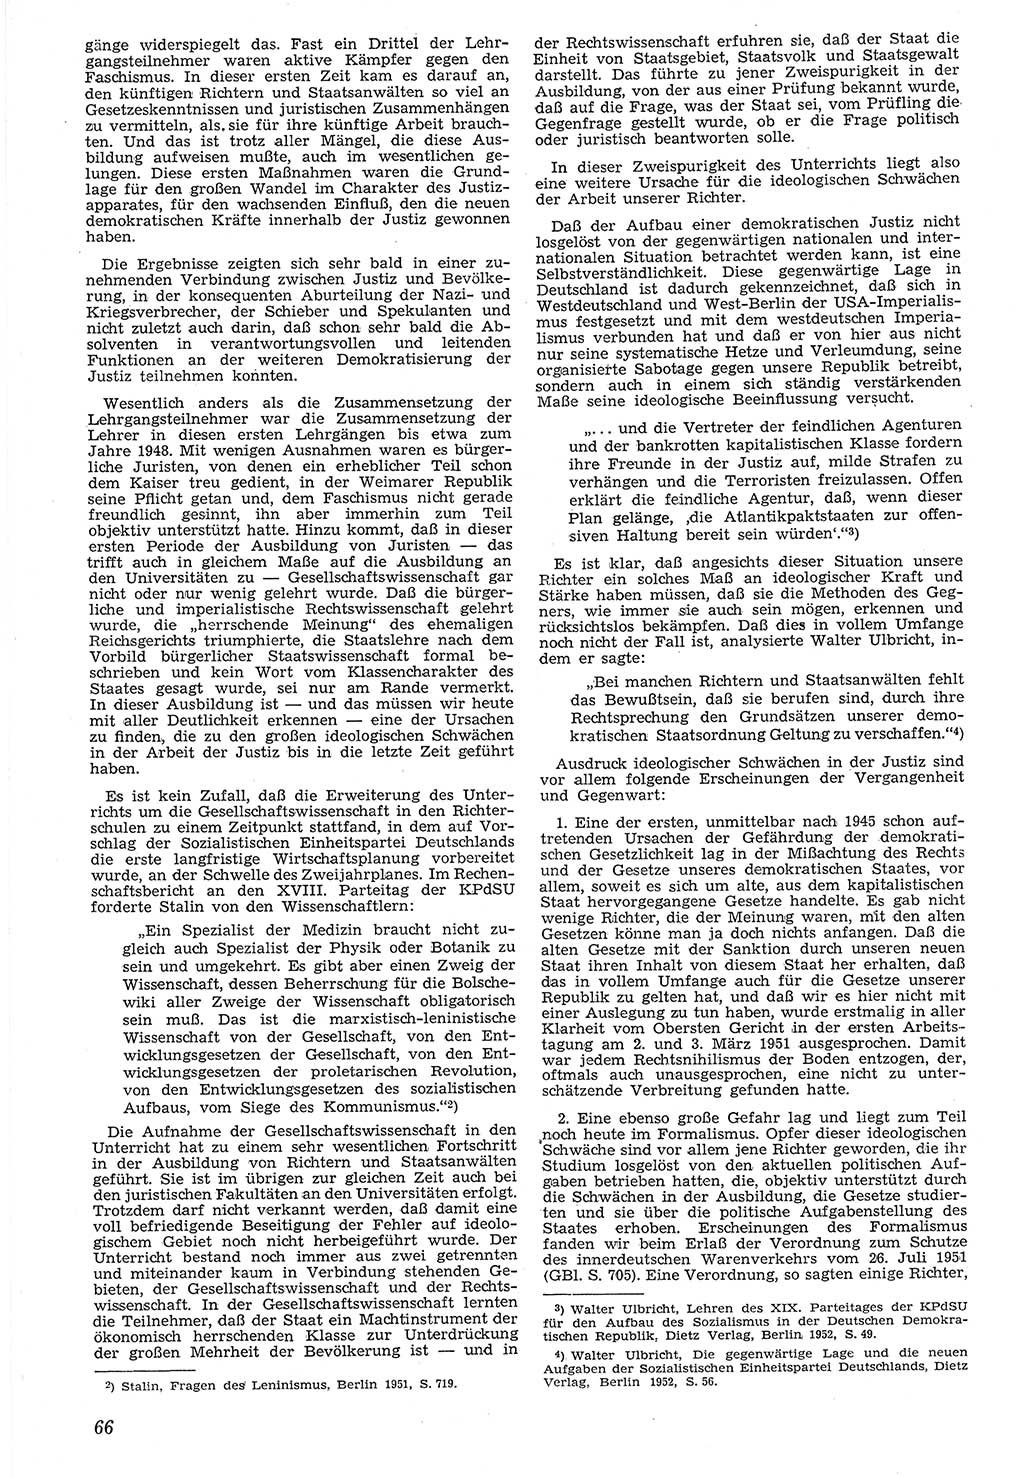 Neue Justiz (NJ), Zeitschrift für Recht und Rechtswissenschaft [Deutsche Demokratische Republik (DDR)], 7. Jahrgang 1953, Seite 66 (NJ DDR 1953, S. 66)